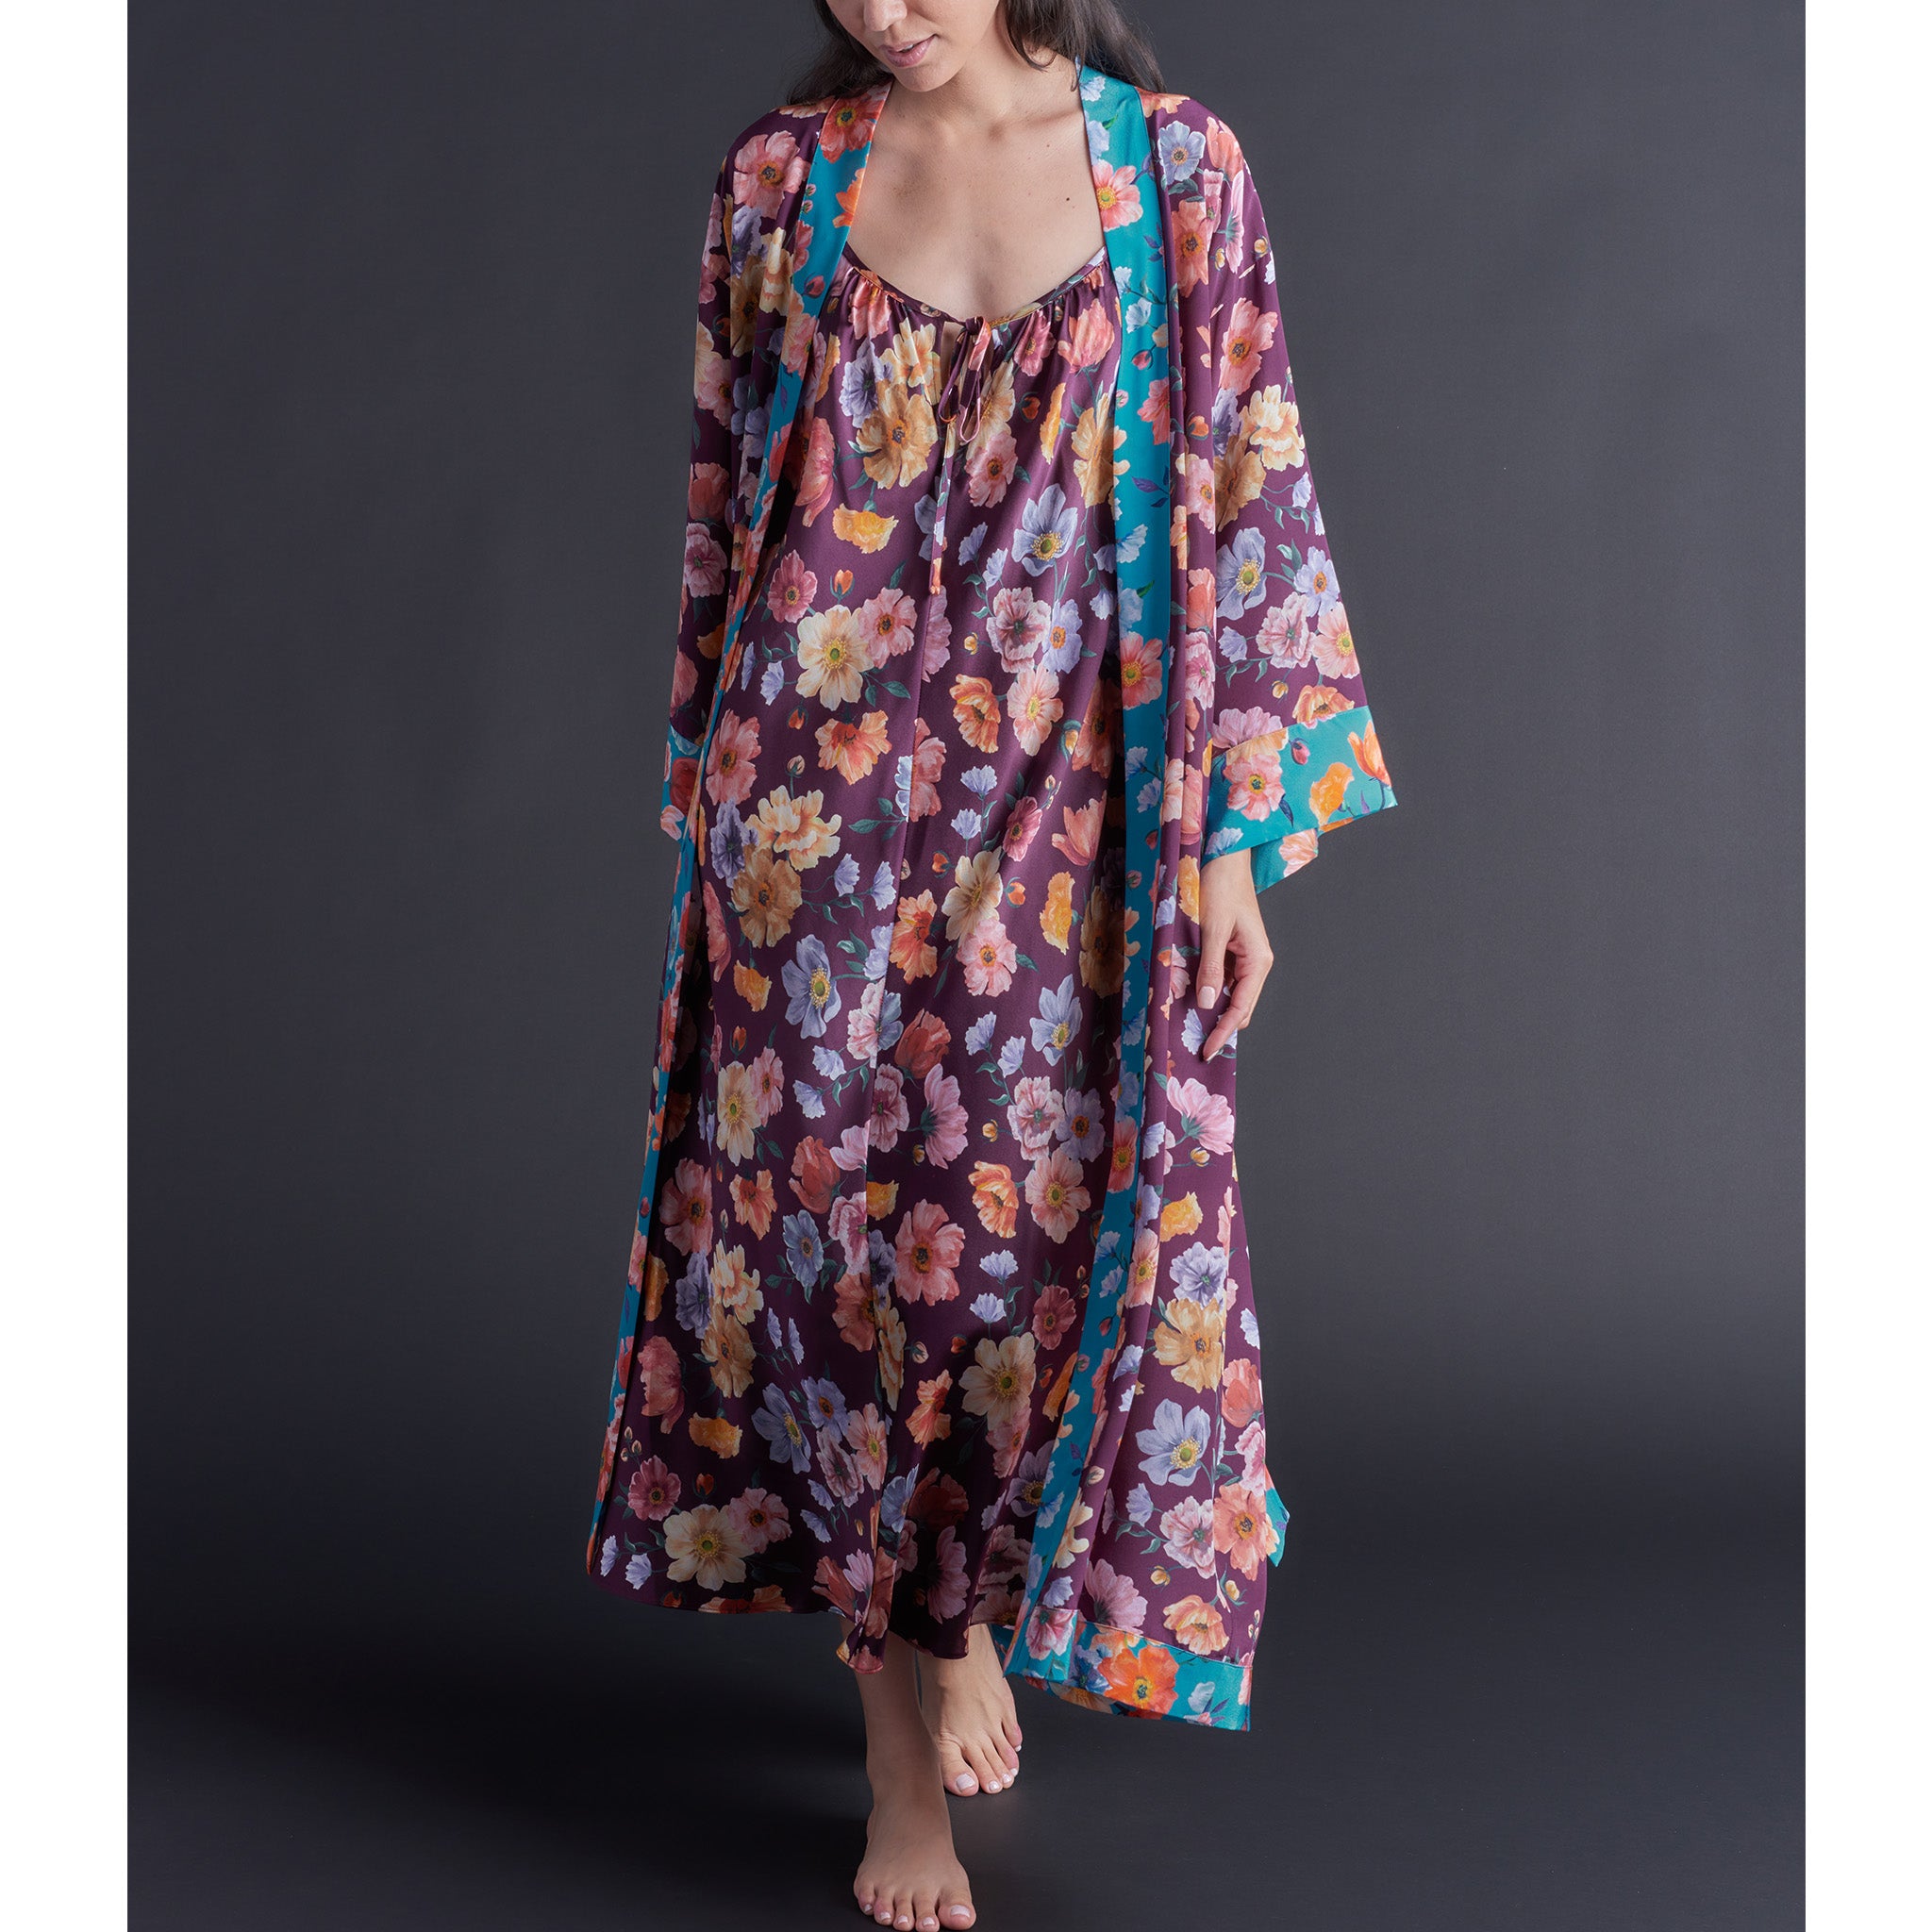 Asteria Kimono Robe in Jessica's Picnic Liberty of London Print Silk Crepe De Chine